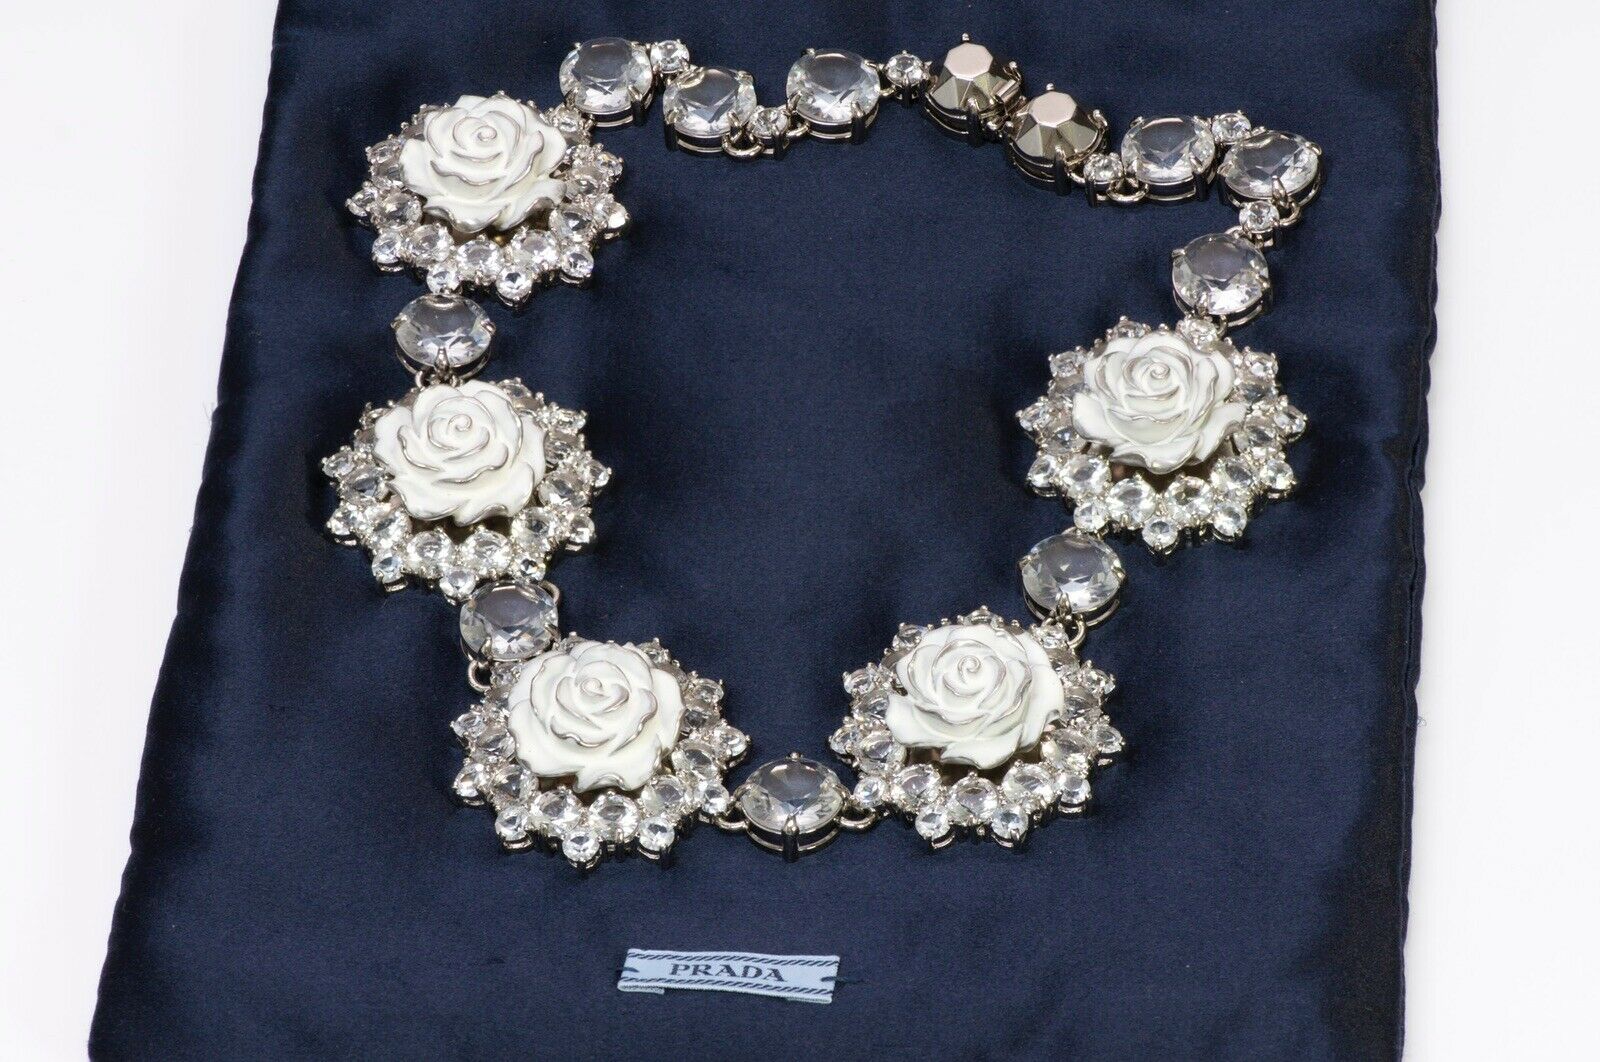 PRADA Spring 2012 White Enamel Crystal Rose Collar Necklace